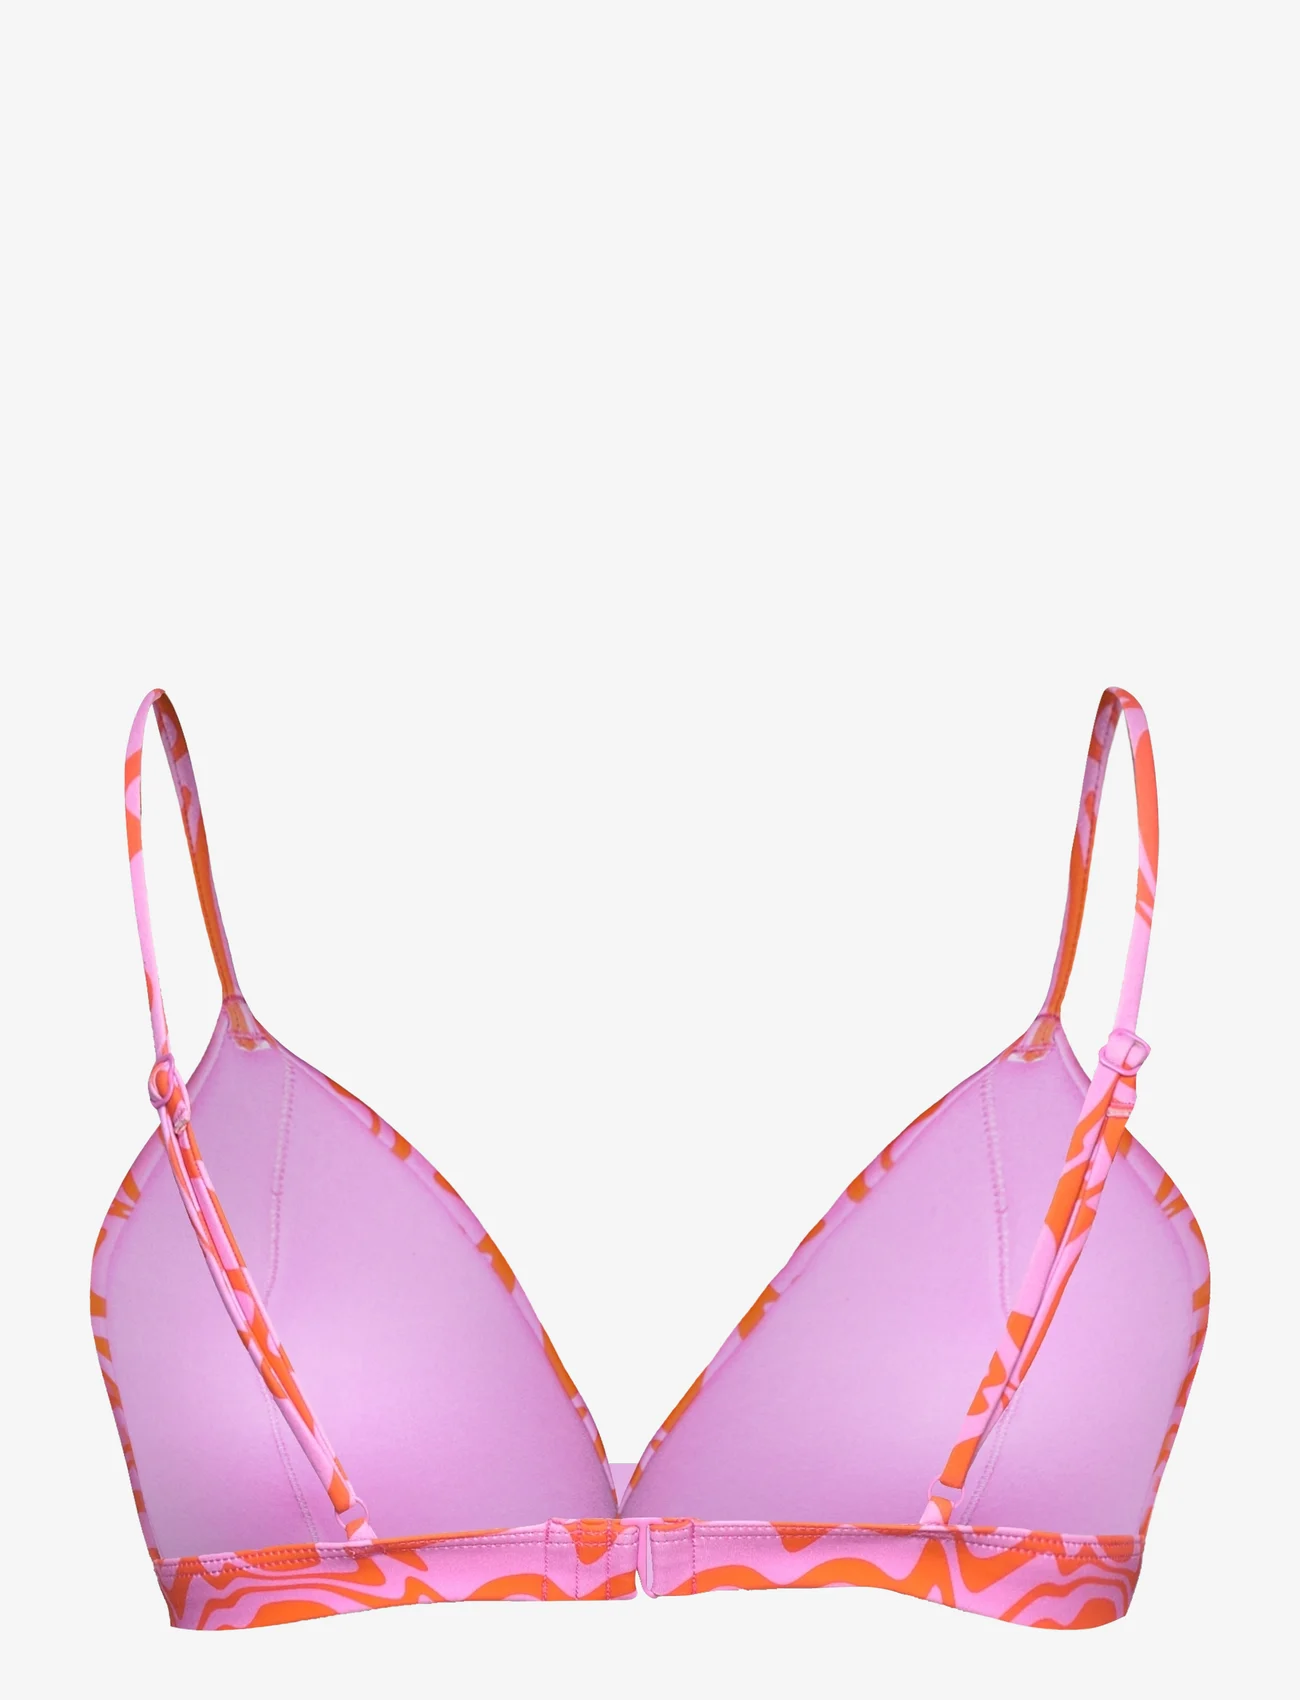 Envii - ENJELLYFISH SWIM BRA AOP 7016 - trikampio formos bikinio liemenėlės - wobbely pink - 1